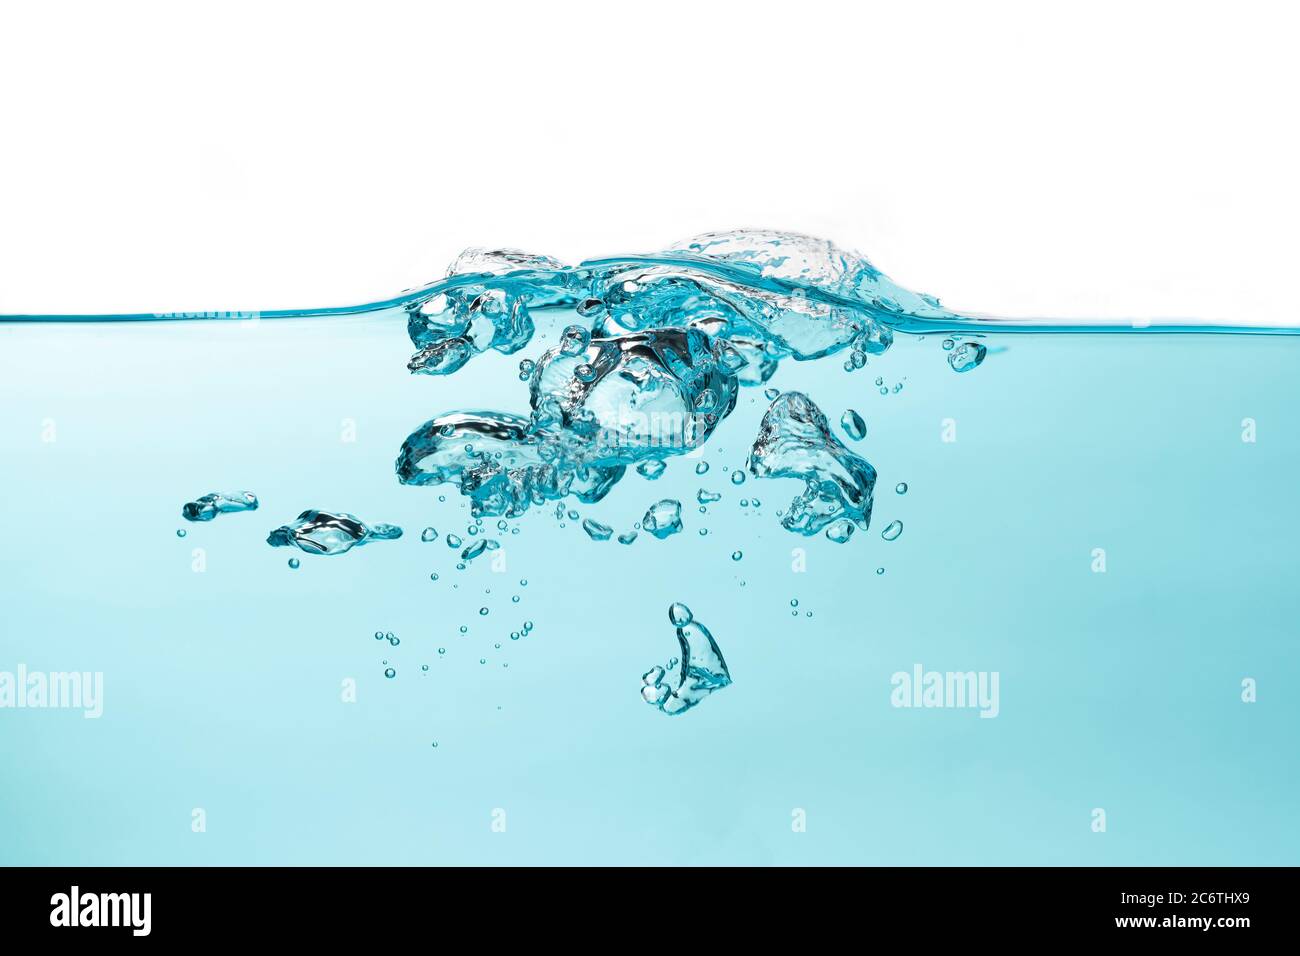 Burbujas de aire y salpicaduras de agua, salpicaduras de agua aisladas sobre fondo blanco y azul. Foto de stock